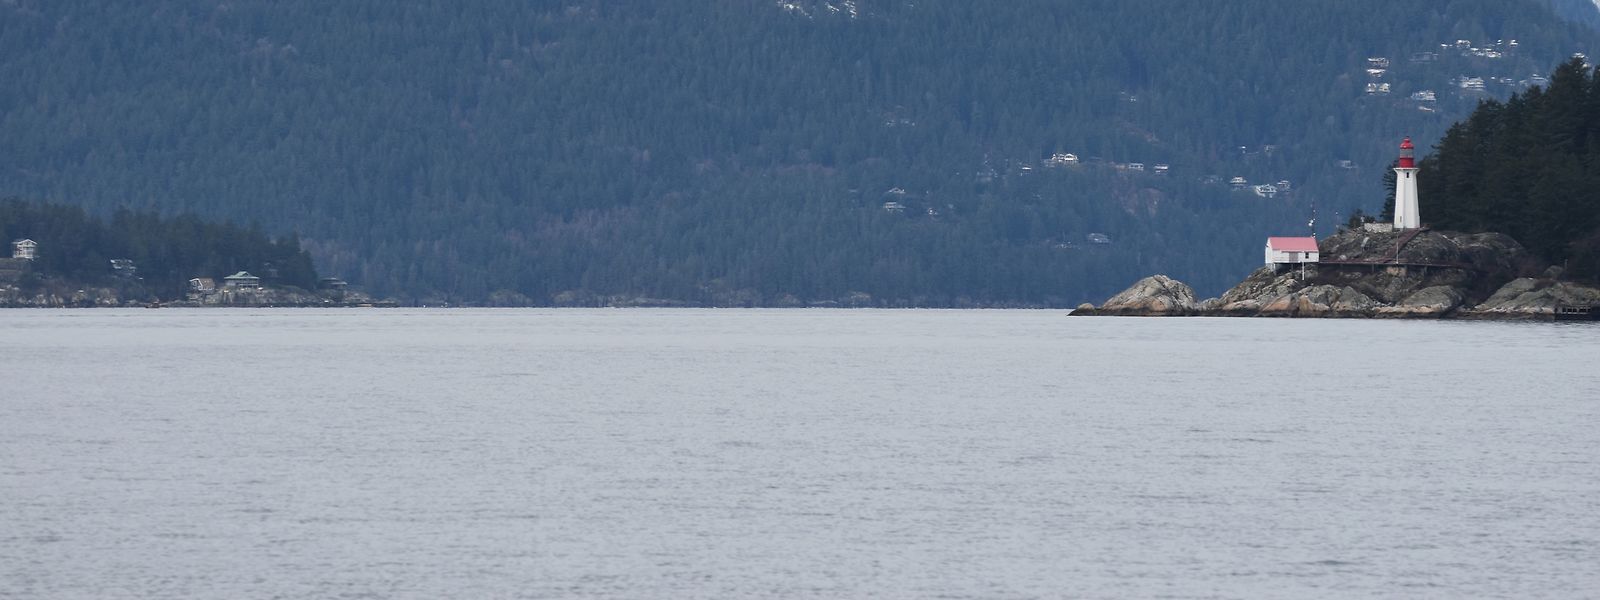 Der Howe Sound, eine Bucht bei Vancouver, bietet die atemberaubende Kulisse für die dortige Meeresschutzkonferenz 2023.